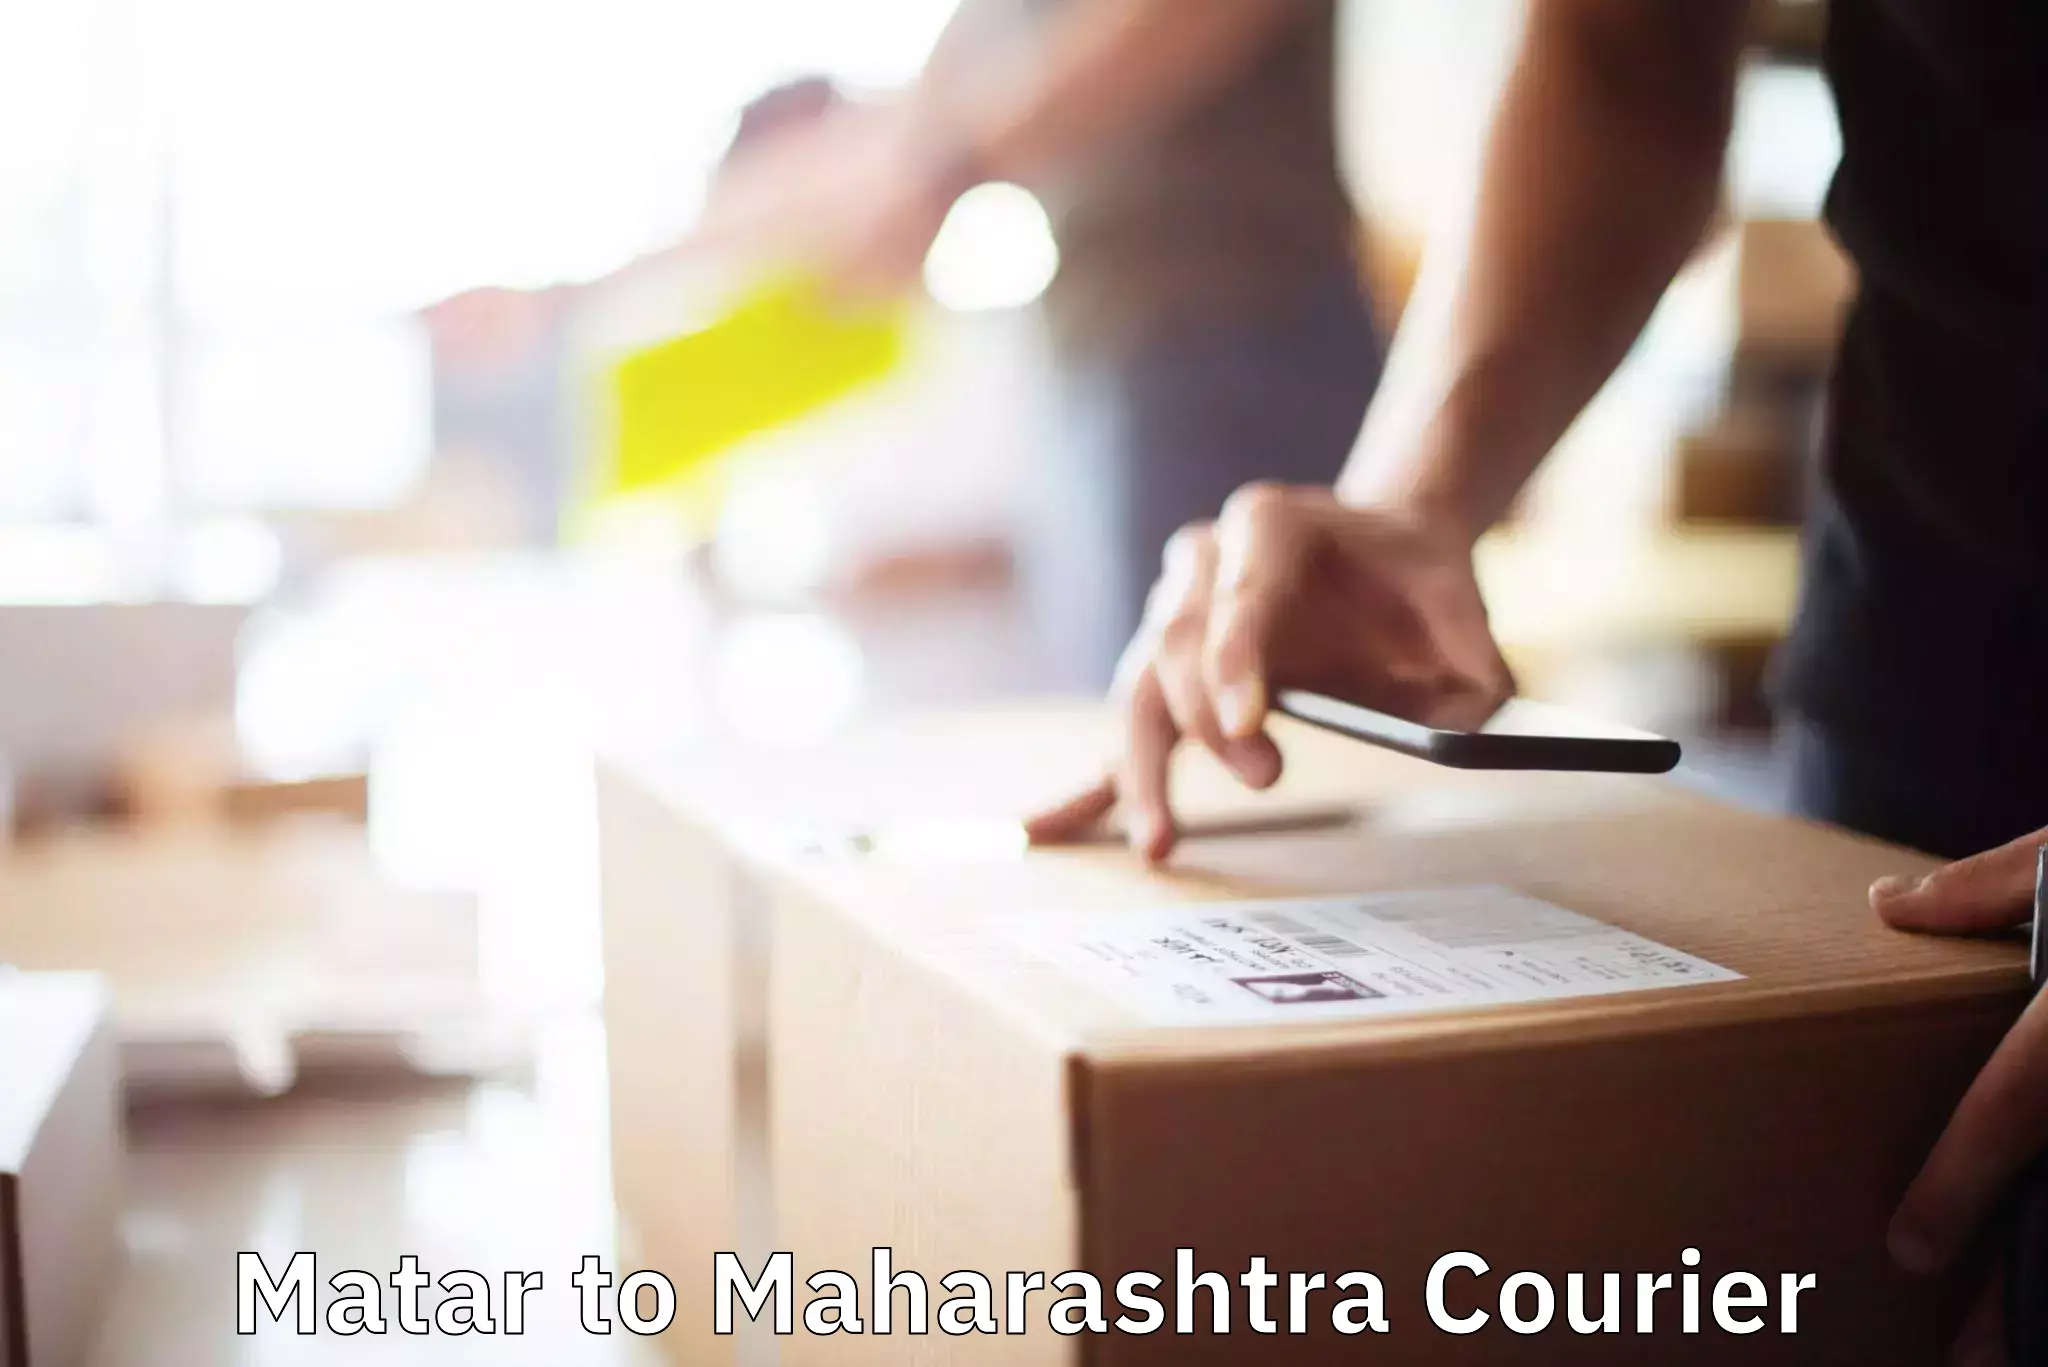 Trusted moving company Matar to Maharashtra